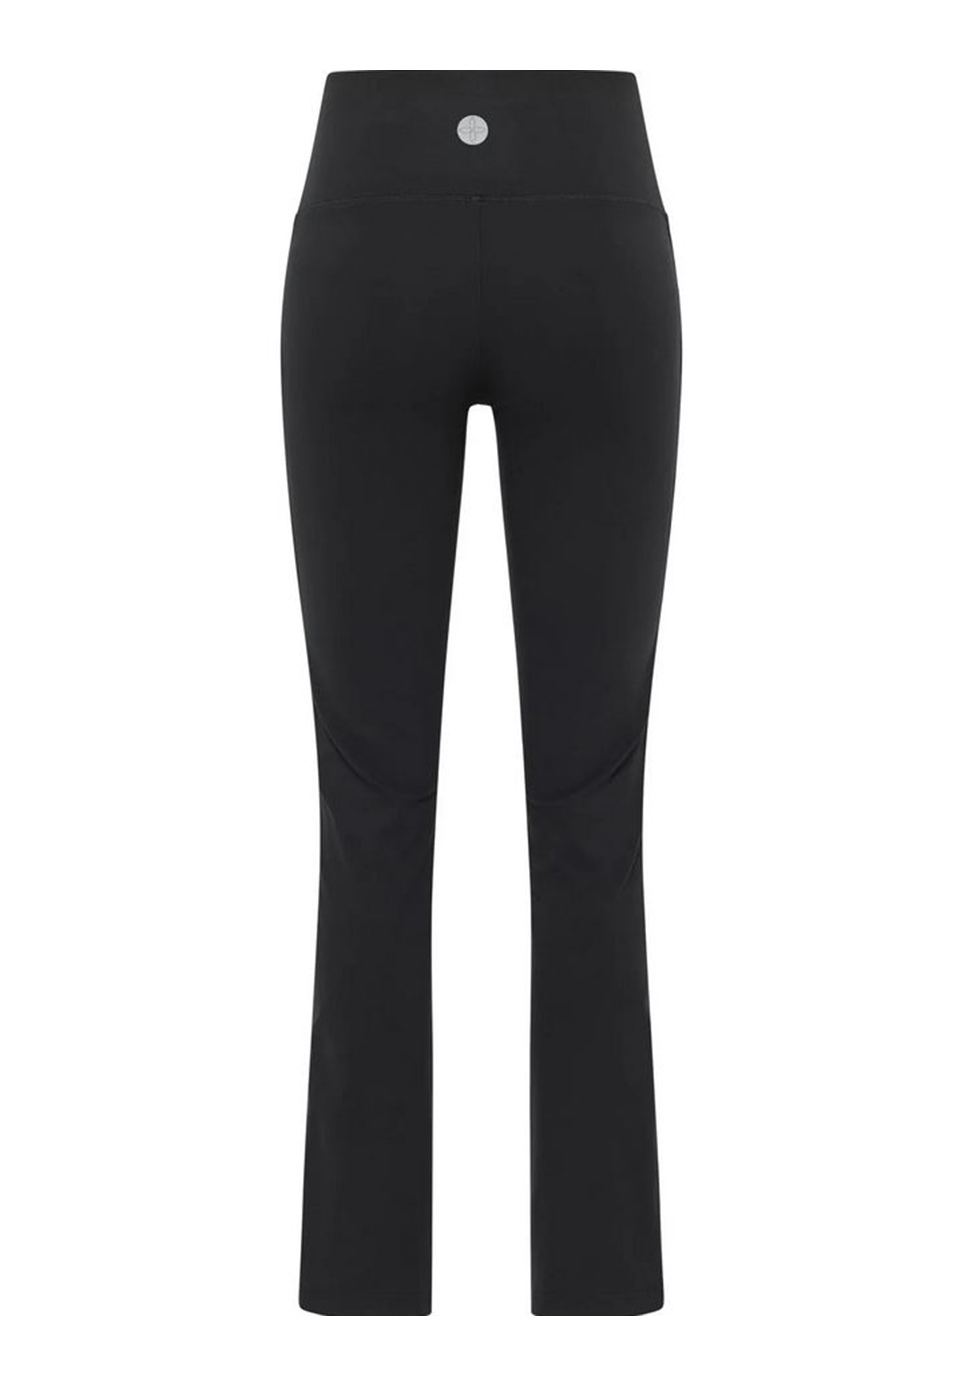 JOY Sportswear Damen Sporthose NICOLE mit schickem Gallonstreifen 36701 schwarz